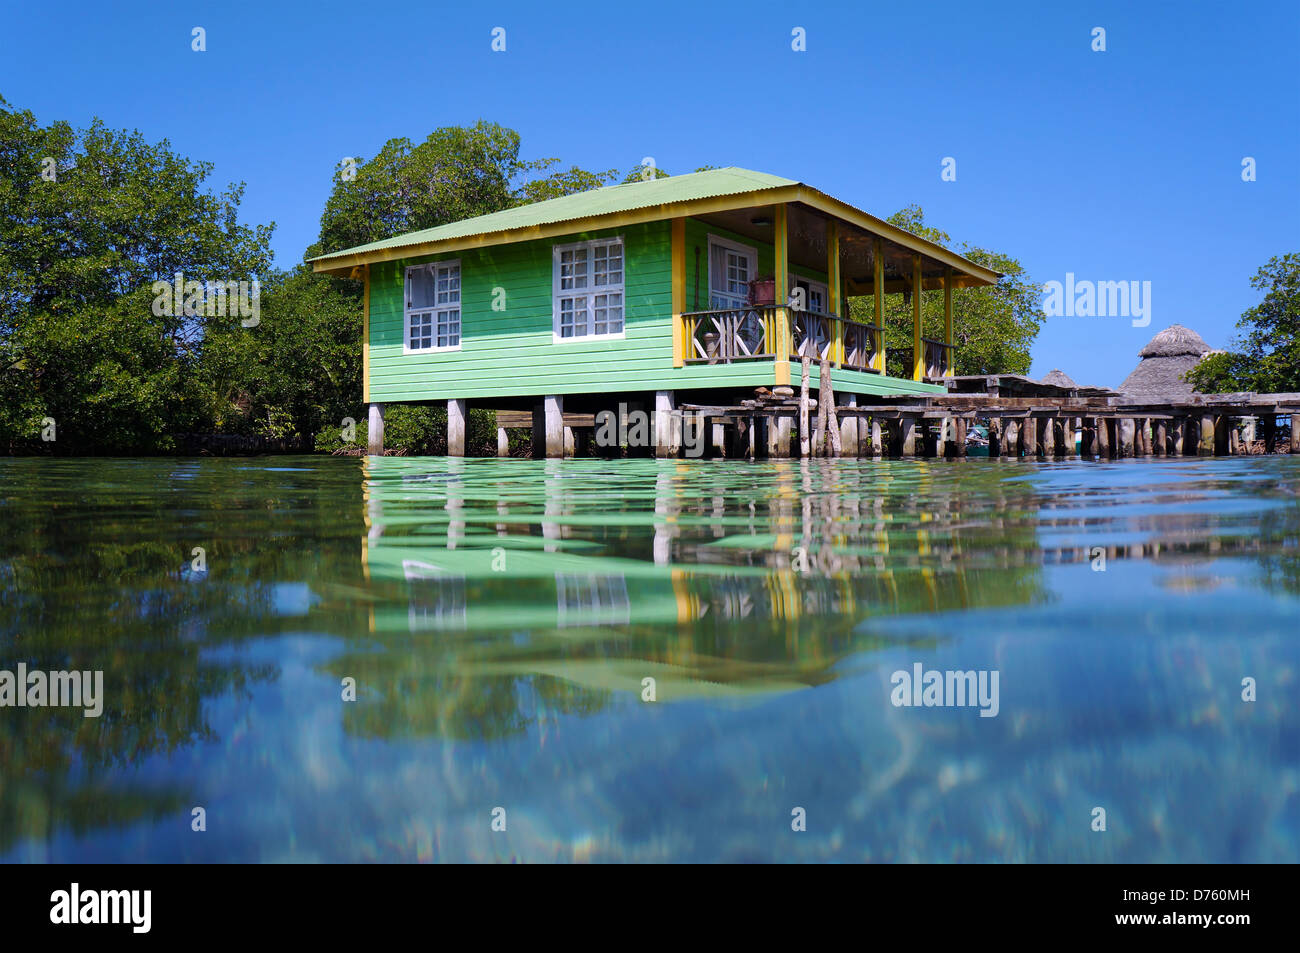 Scieries de maison sur pilotis sur la mer des Caraïbes, l'archipel de Bocas del Toro, Panama, la mer des Caraïbes Banque D'Images